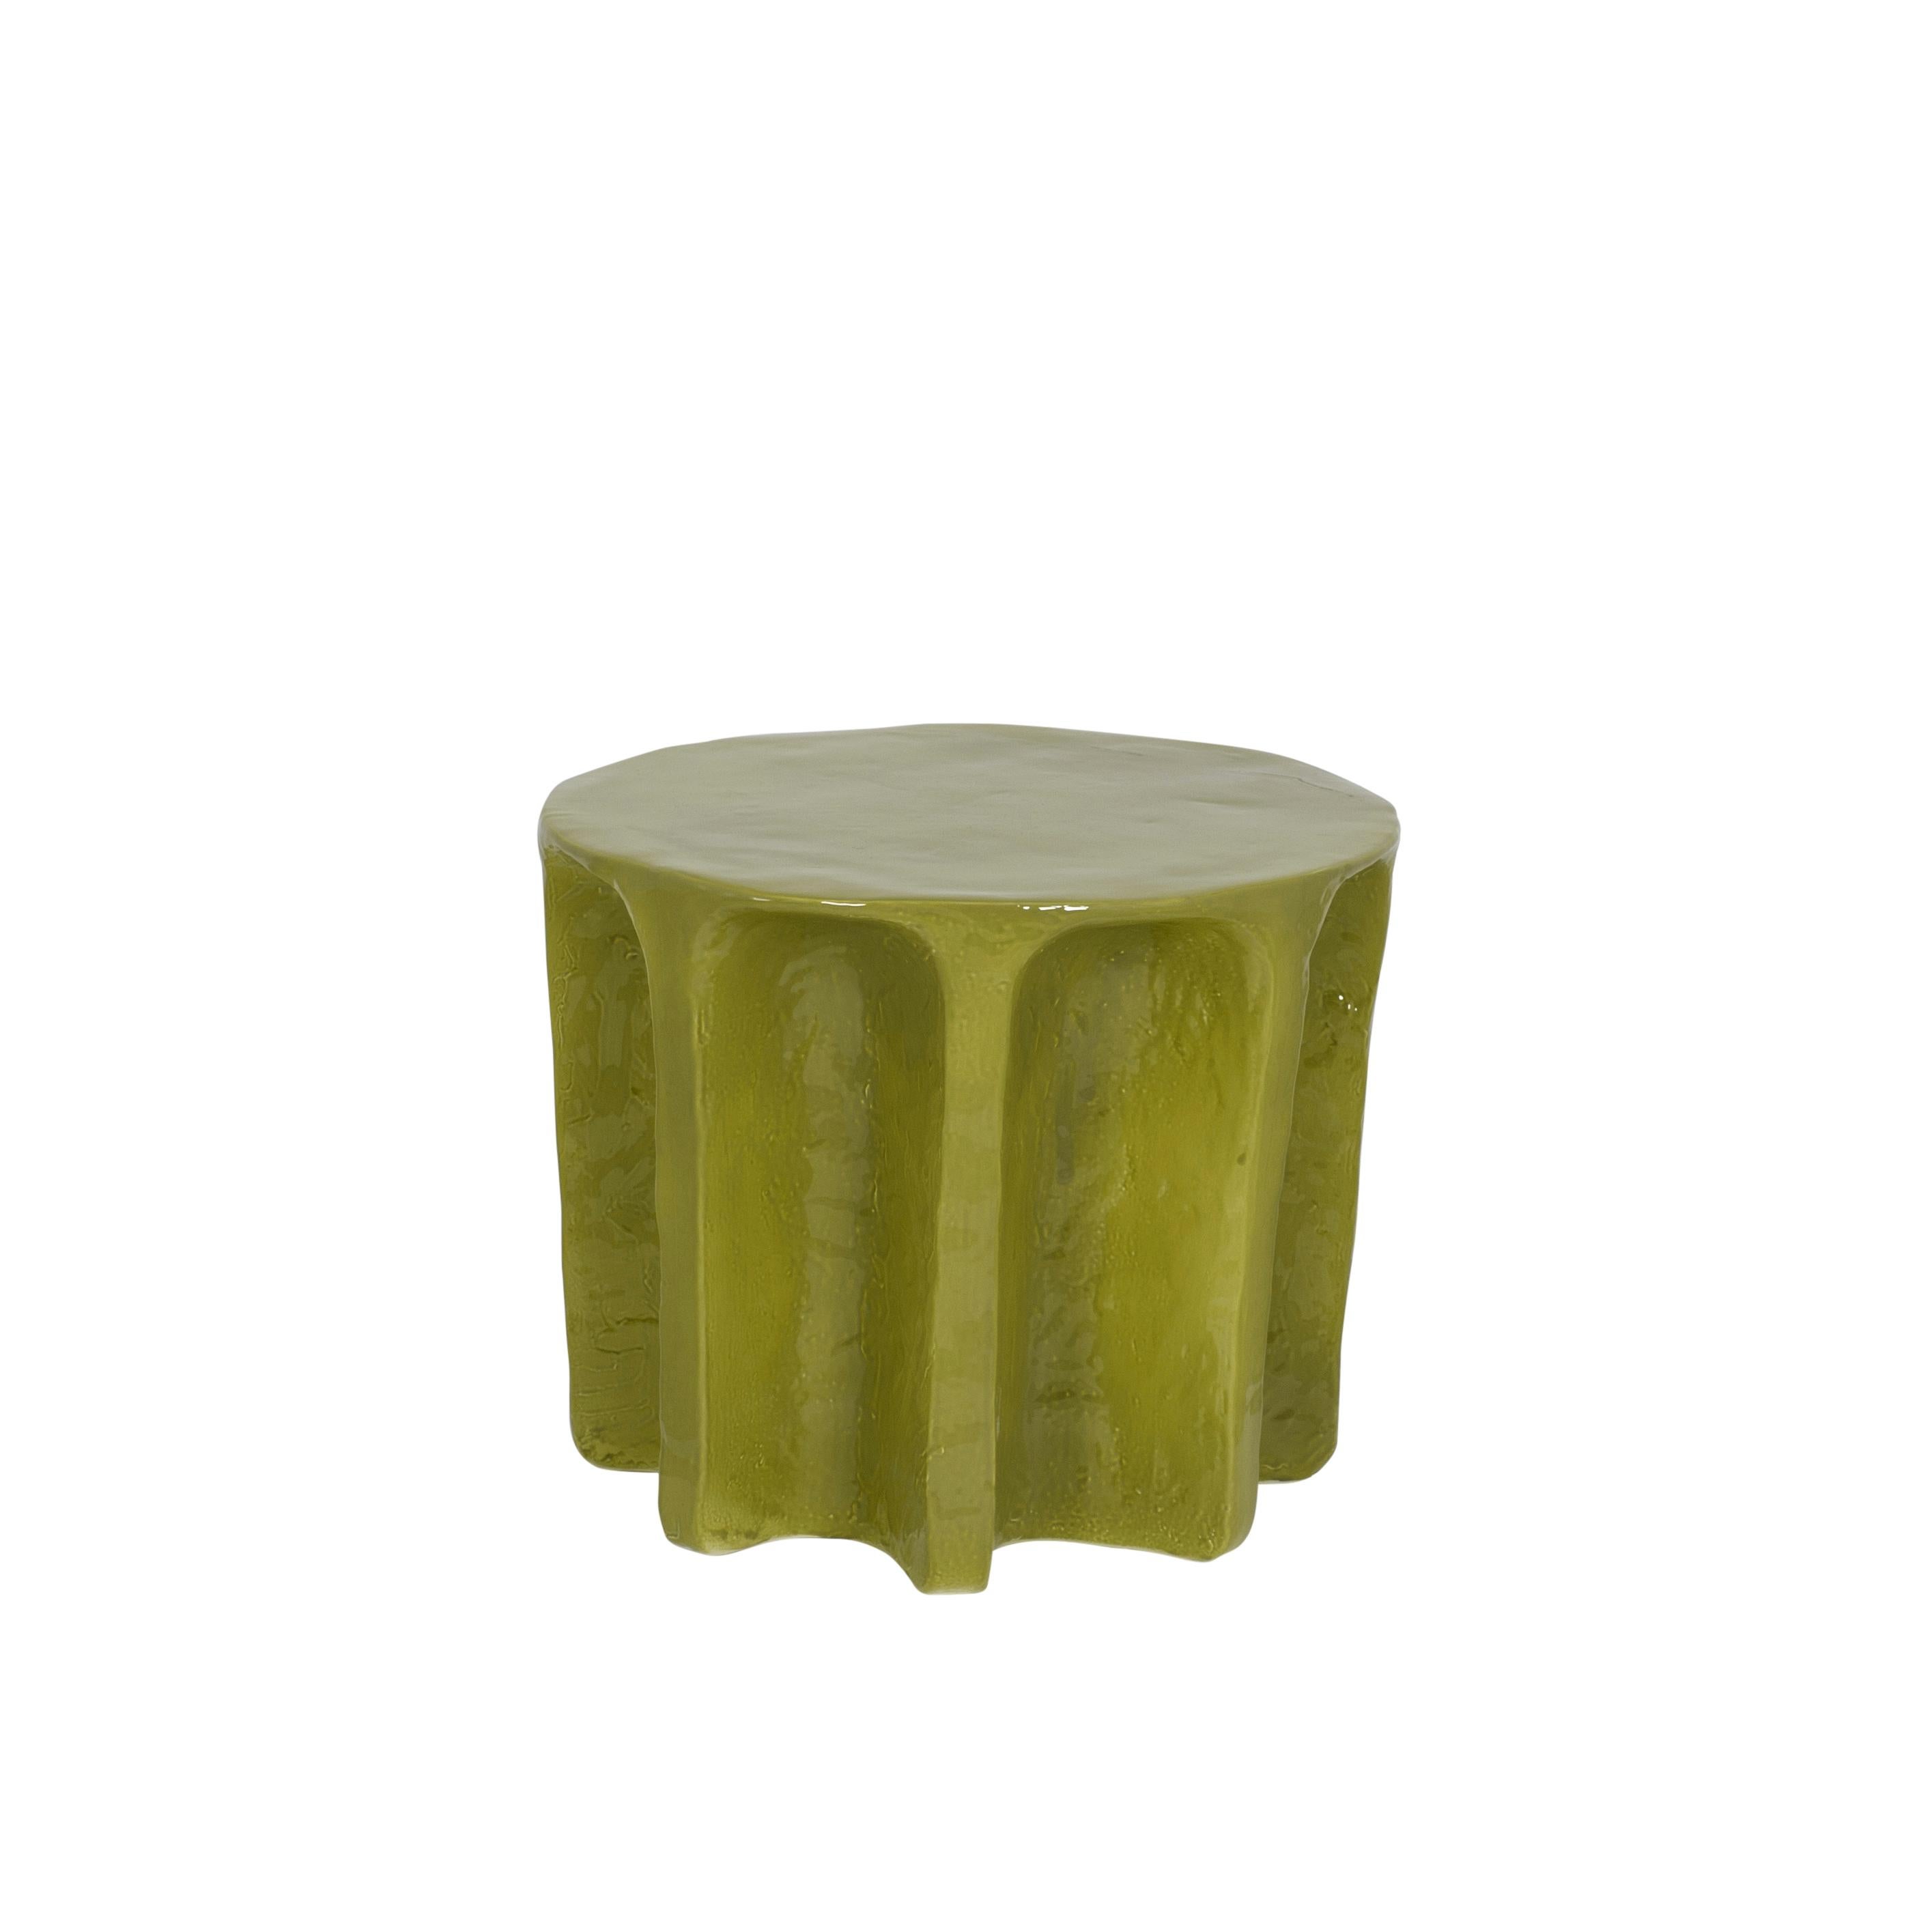 Table basse ronde verte Chouchou de Pulpo
Dimensions : D55 x H45 cm
Matériaux : céramique

Également disponible en différentes couleurs.

Chouchou porte les contours d'une colonne antique - ce qui, connaissant le designer Lorenzo Zanovello, est très